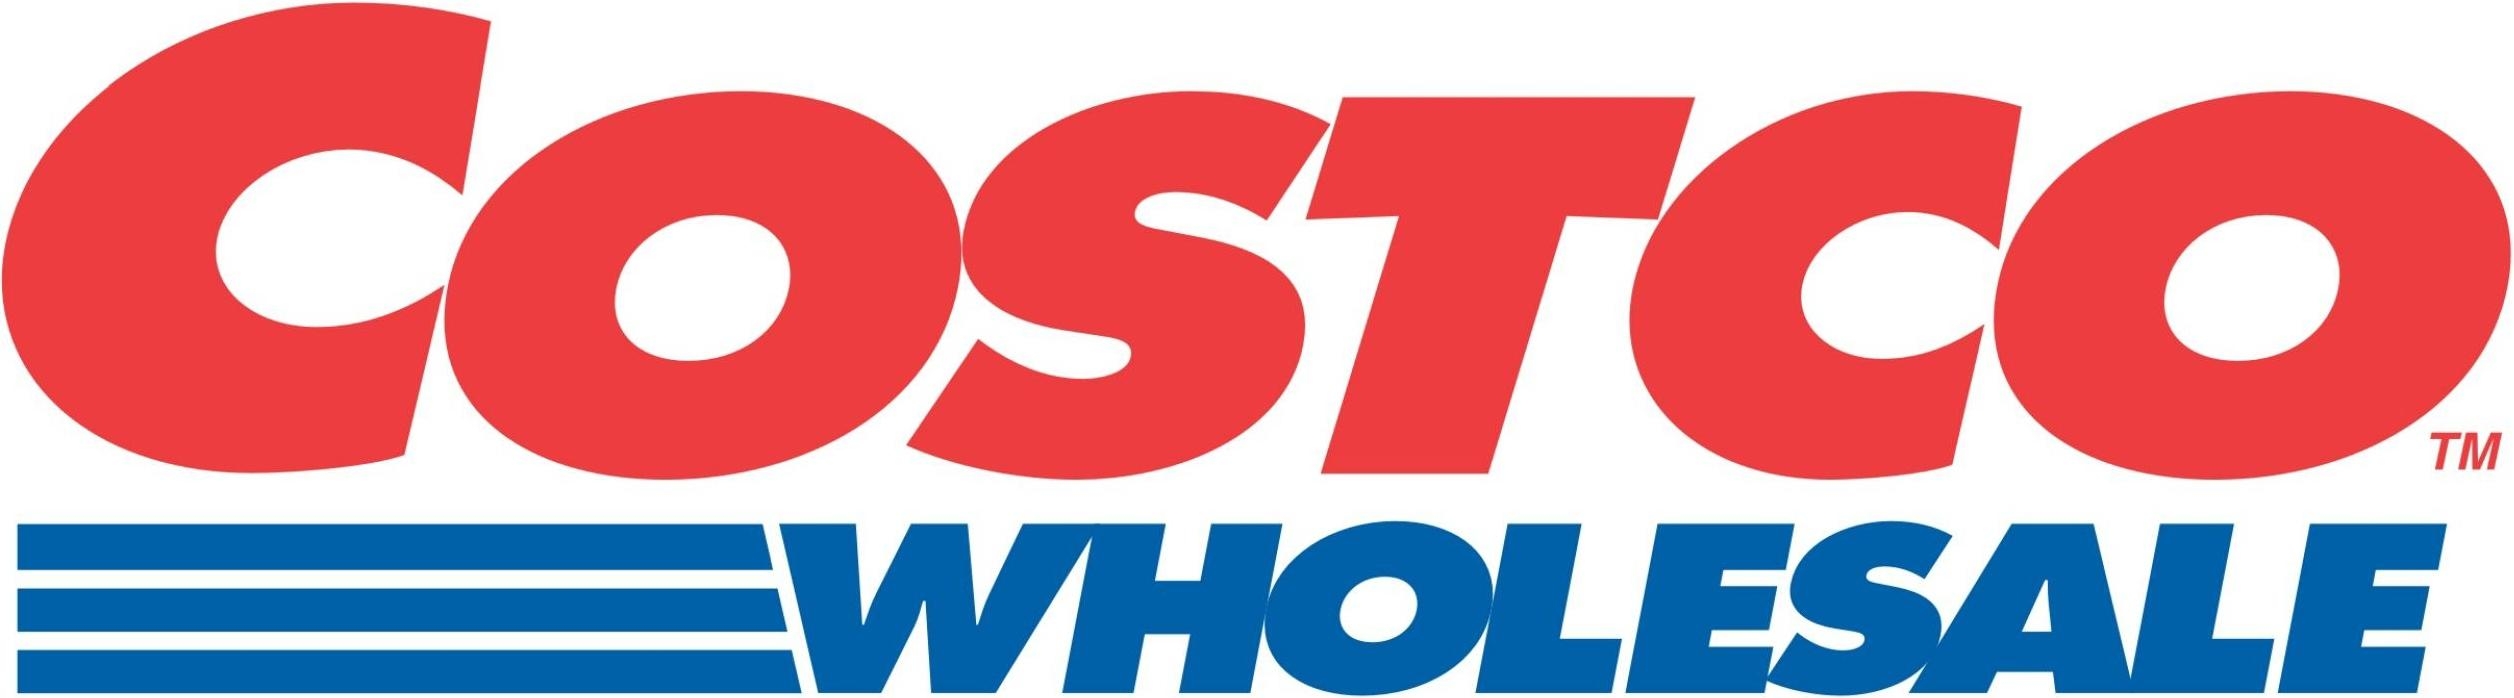 капитализация компании Costco Wholesale 